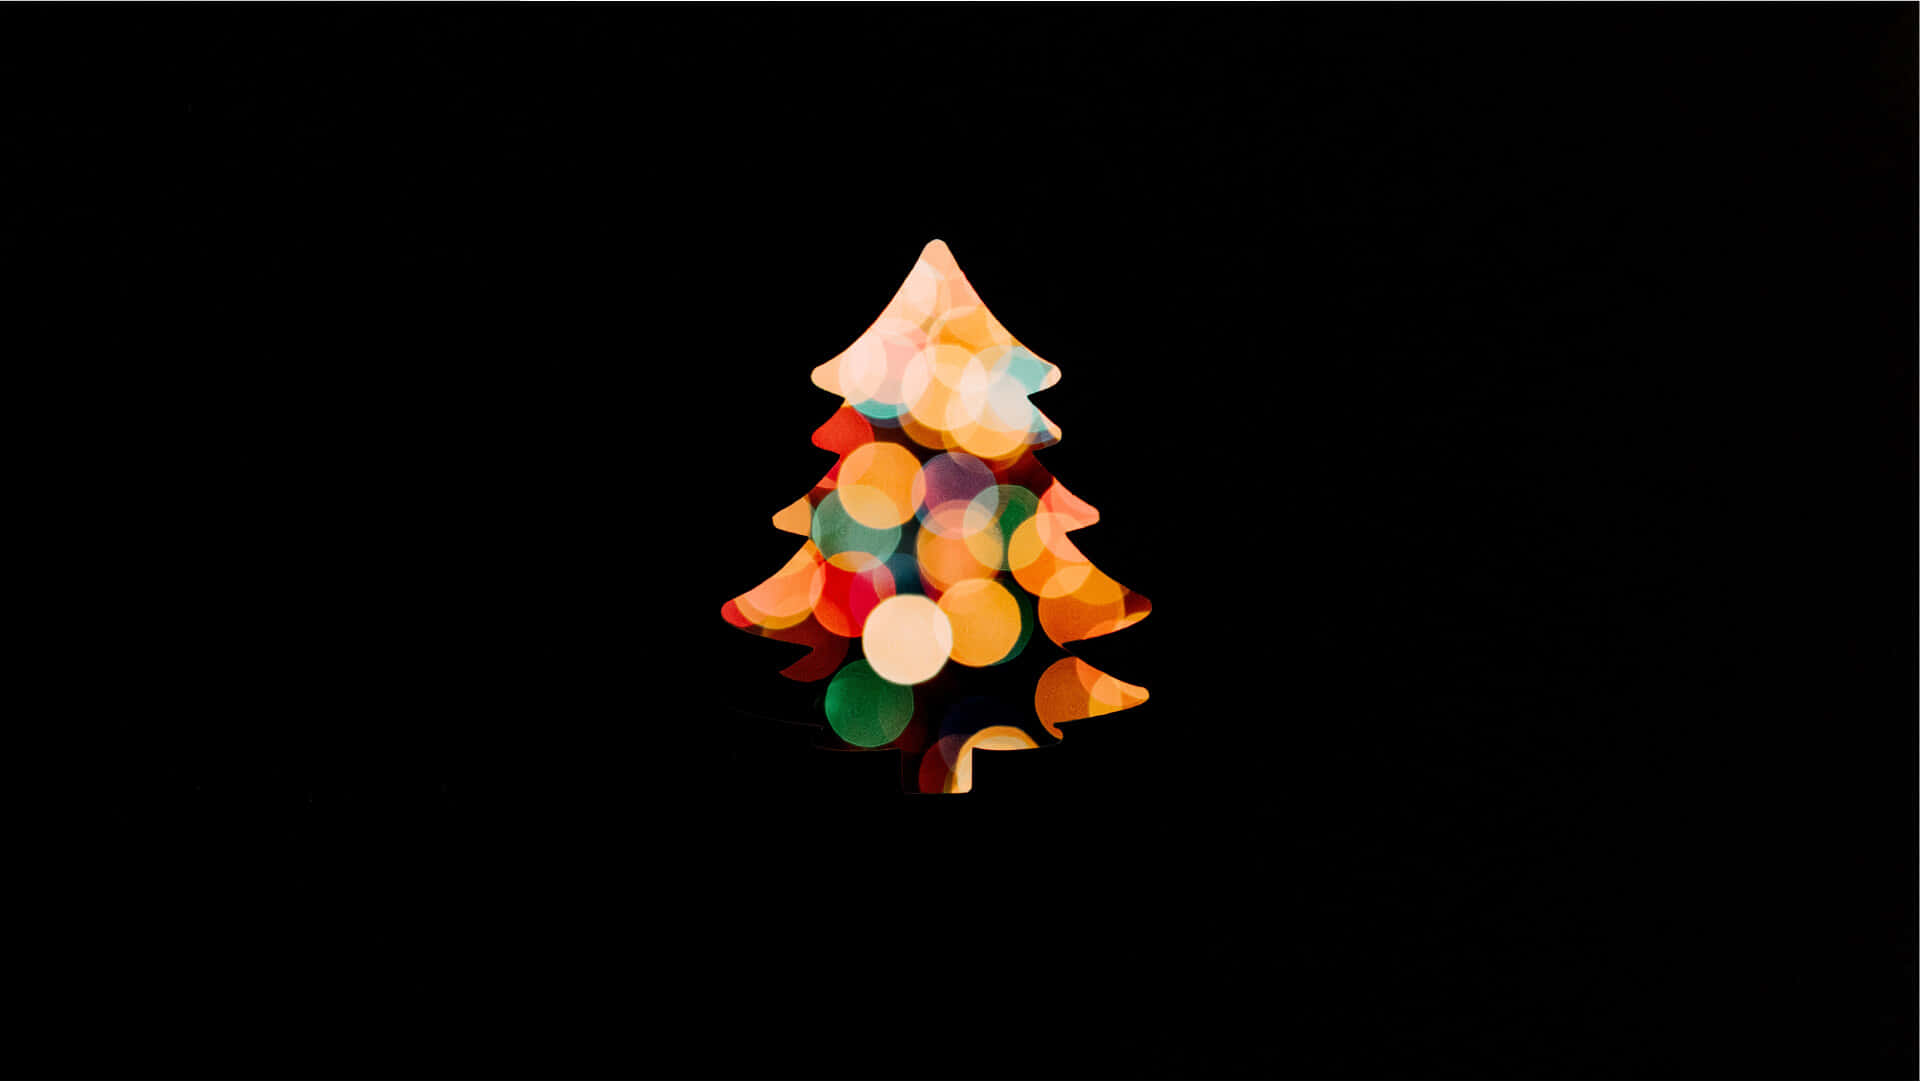 Feiernsie Die Feiertage Mit Einem Wunderschönen Minimalistischen Weihnachts-desktop Wallpaper